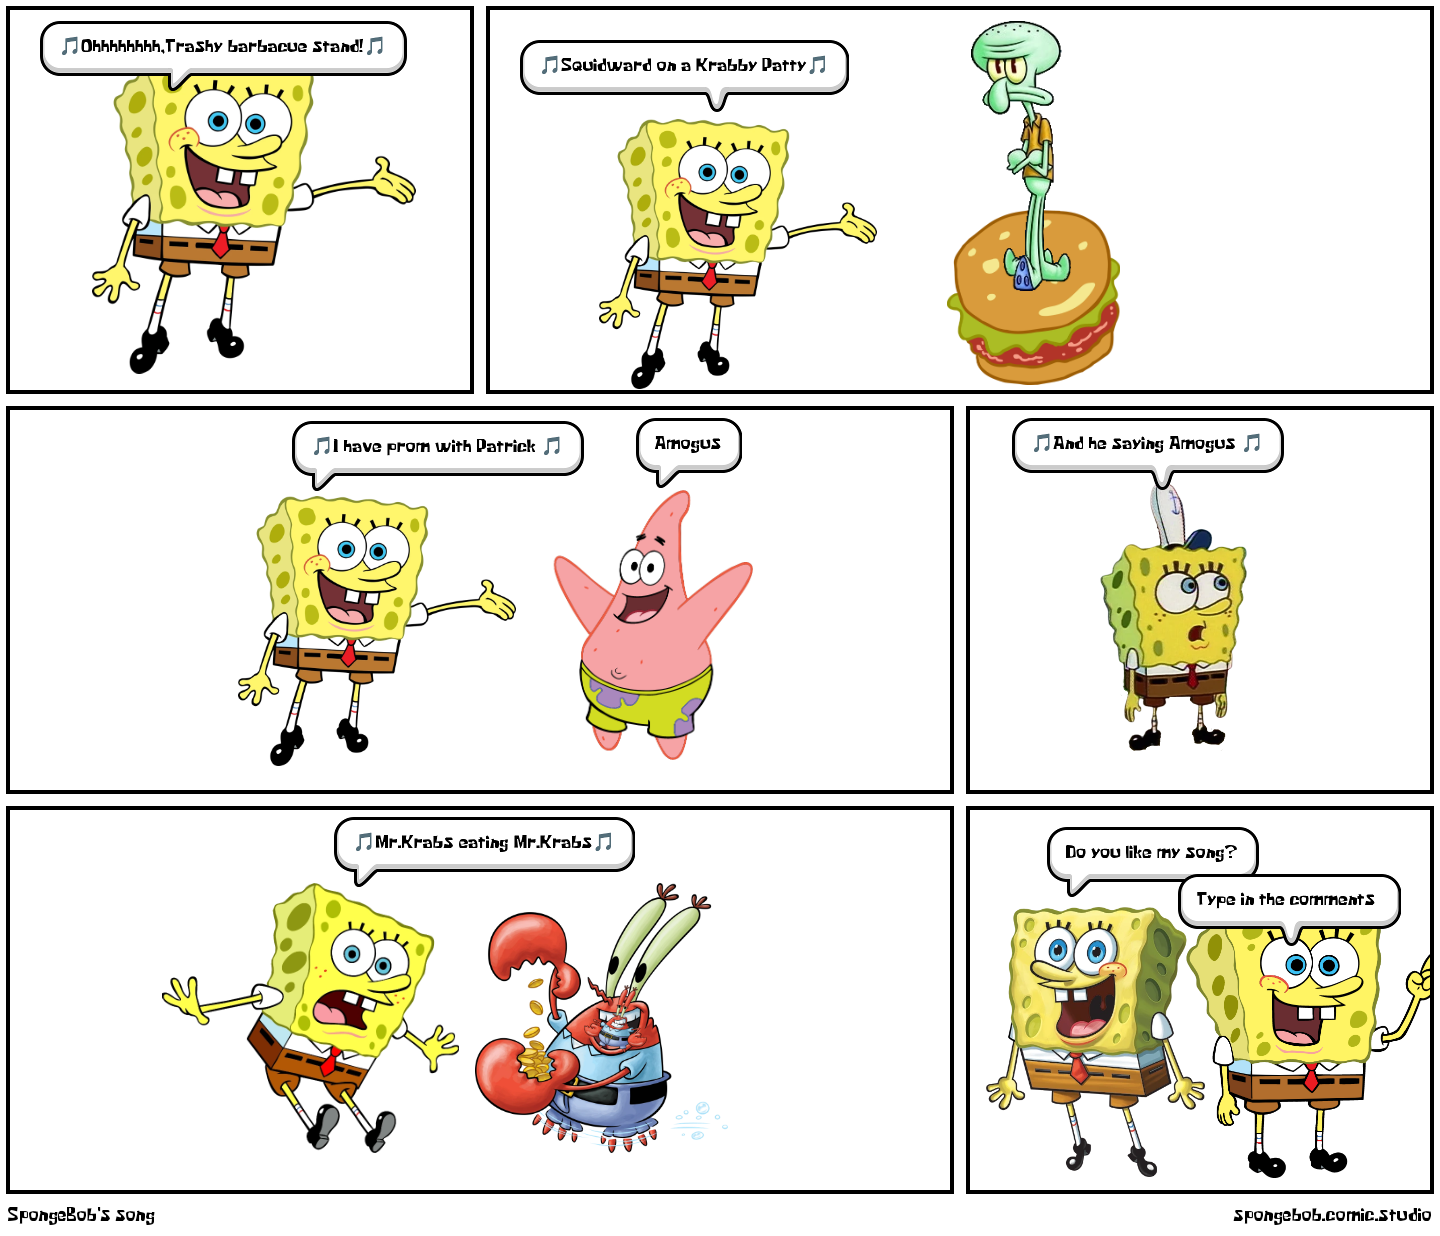 SpongeBob's song